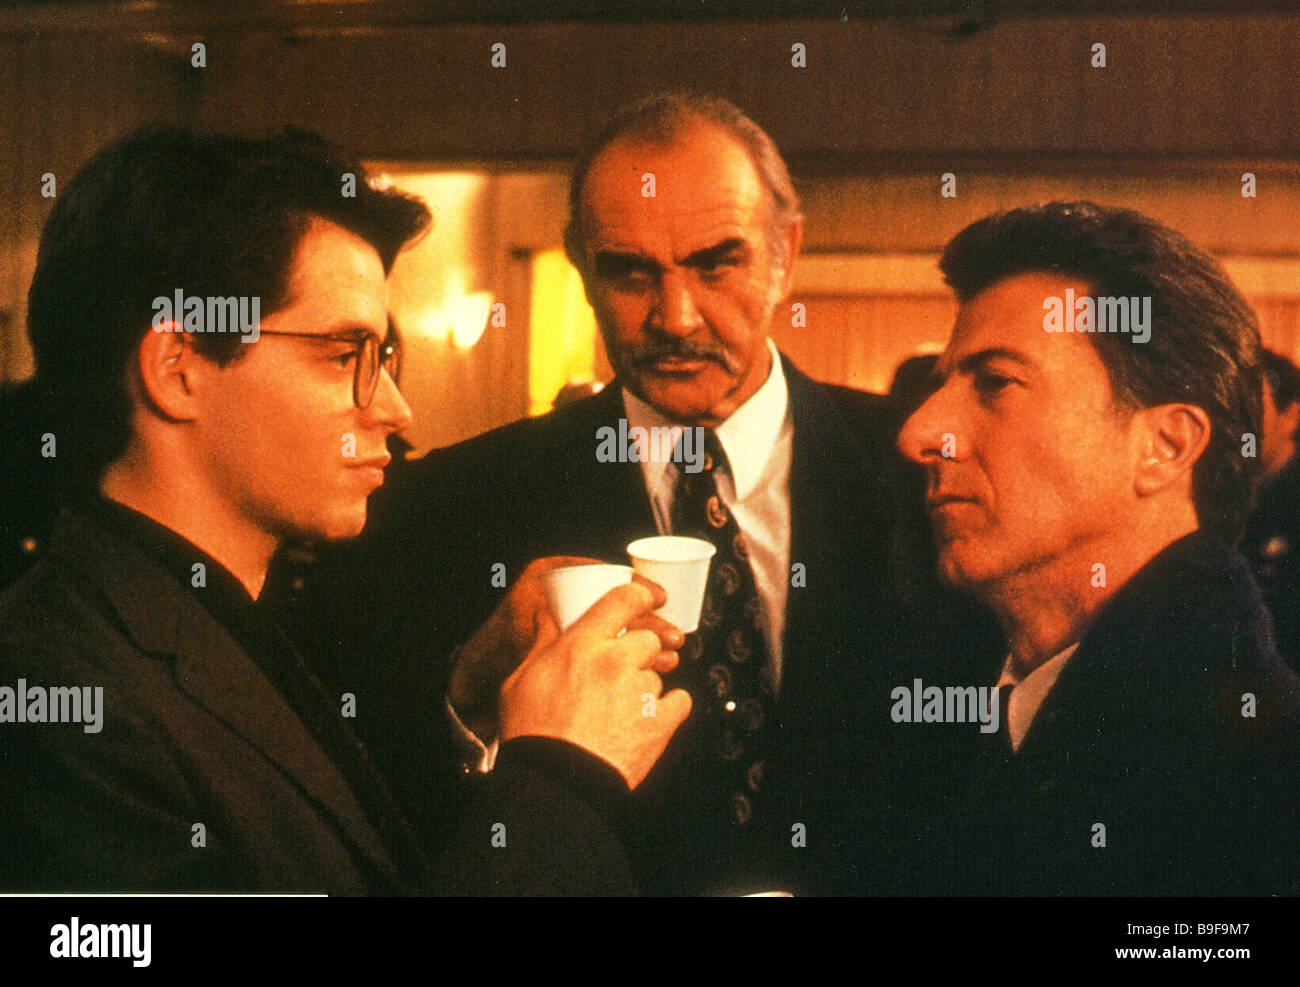 Entreprise familiale 1989 Palace de gauche film avec Matthew Broderick, Sean Connery et Dustin Hoffman Banque D'Images